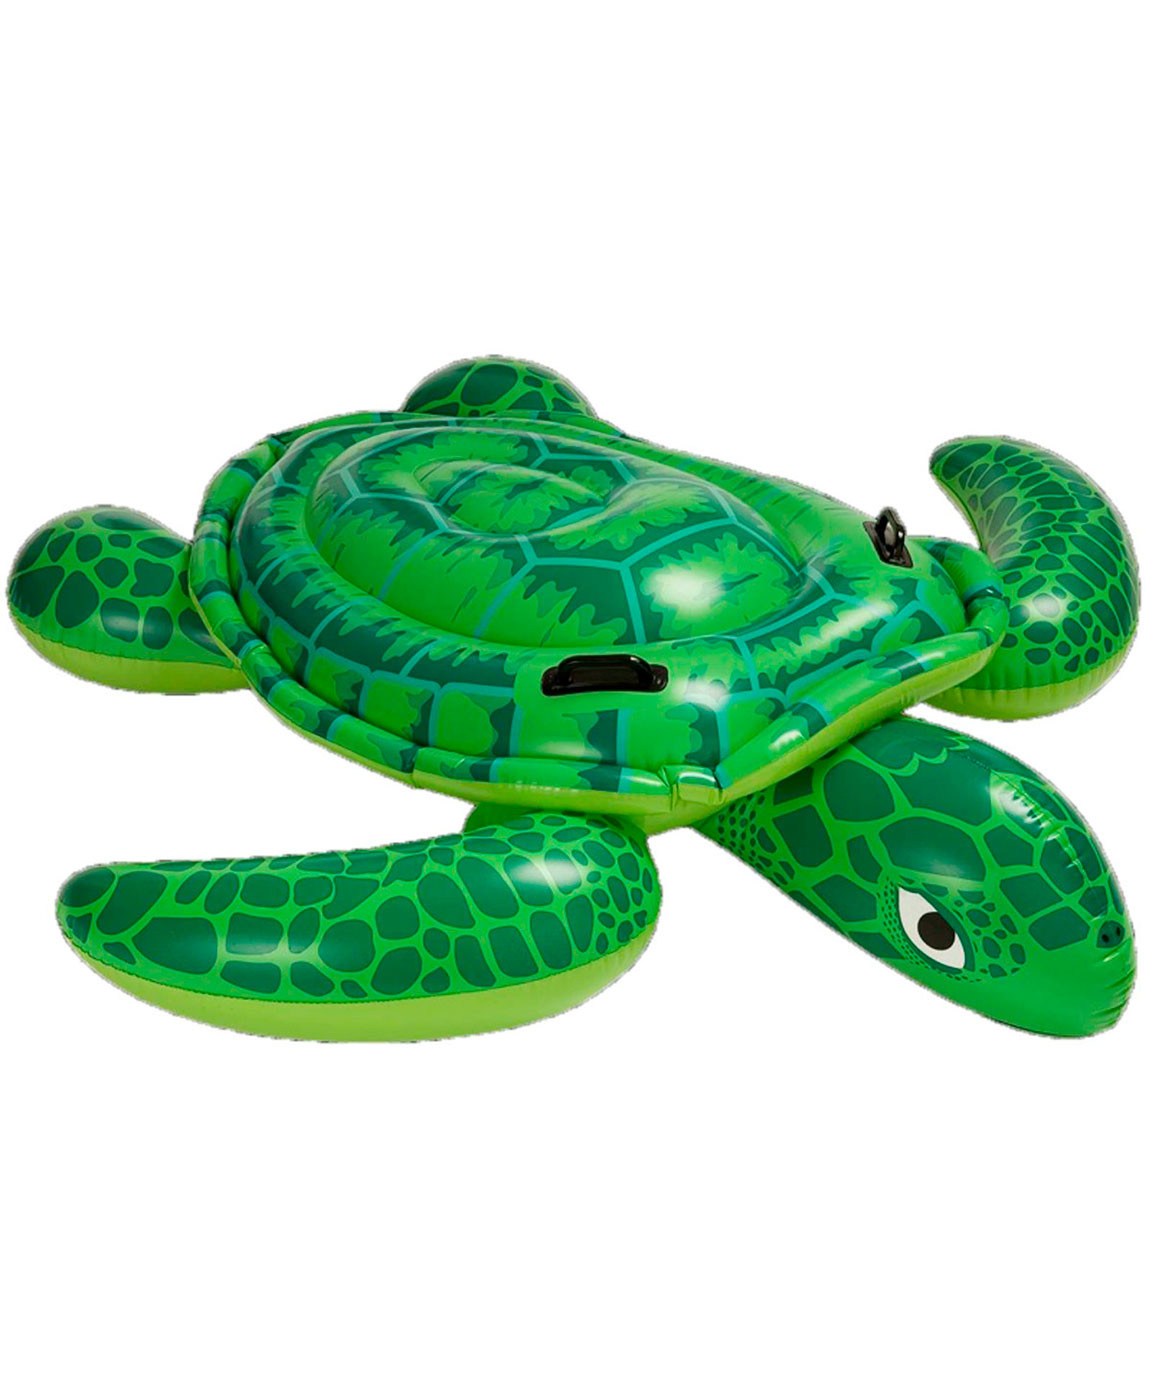 Надувная игрушка Intex Морская черепаха 57524 надувная игрушка intex морская черепаха 57524